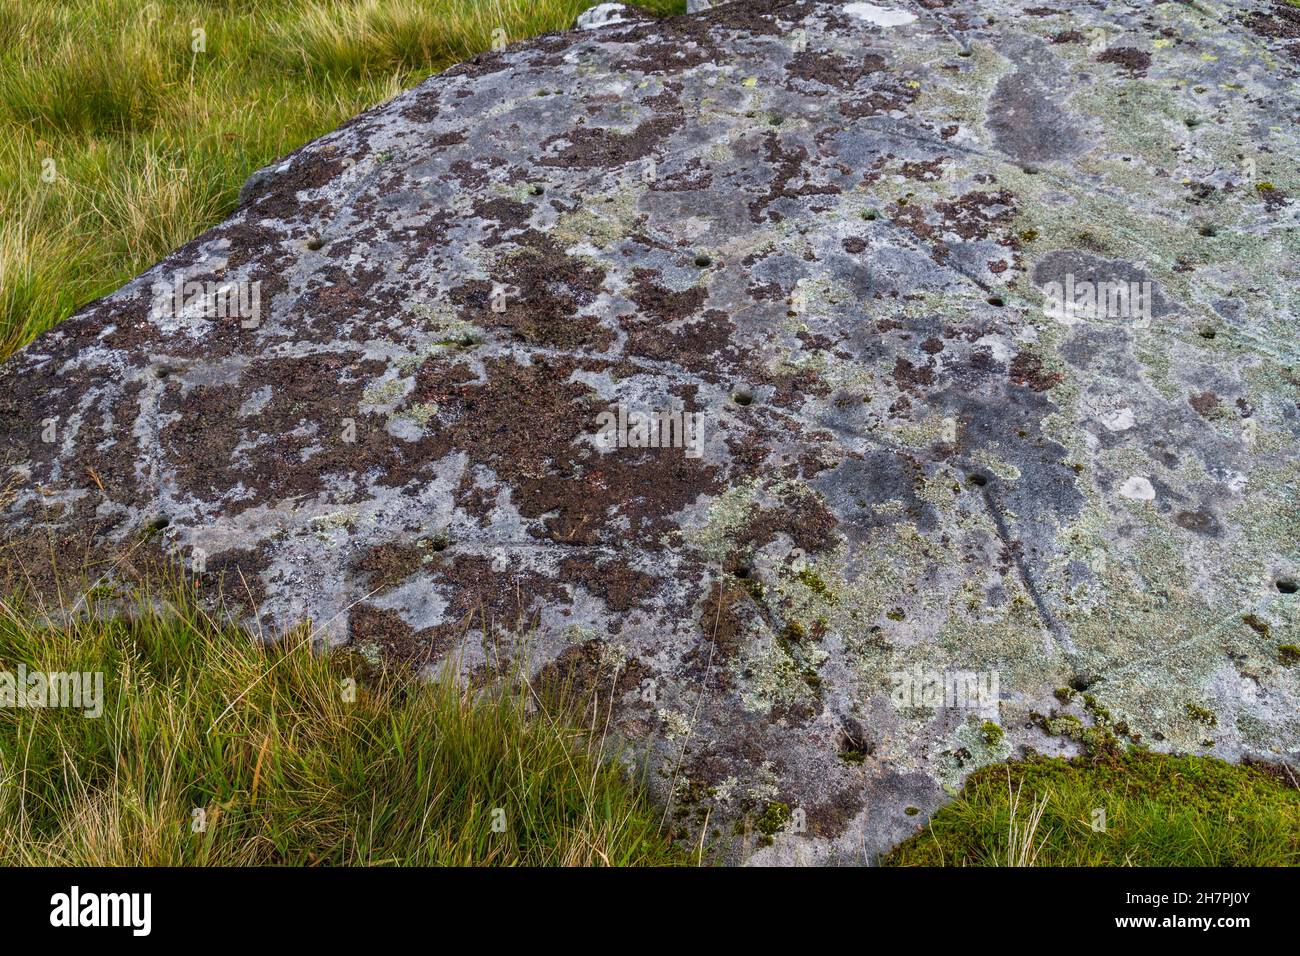 North Wales Rock Cannon, hoyos en roca o roca. Arma de polvo utilizada para hacer bangs en celebraciones paisaje con hierba. Foto de stock